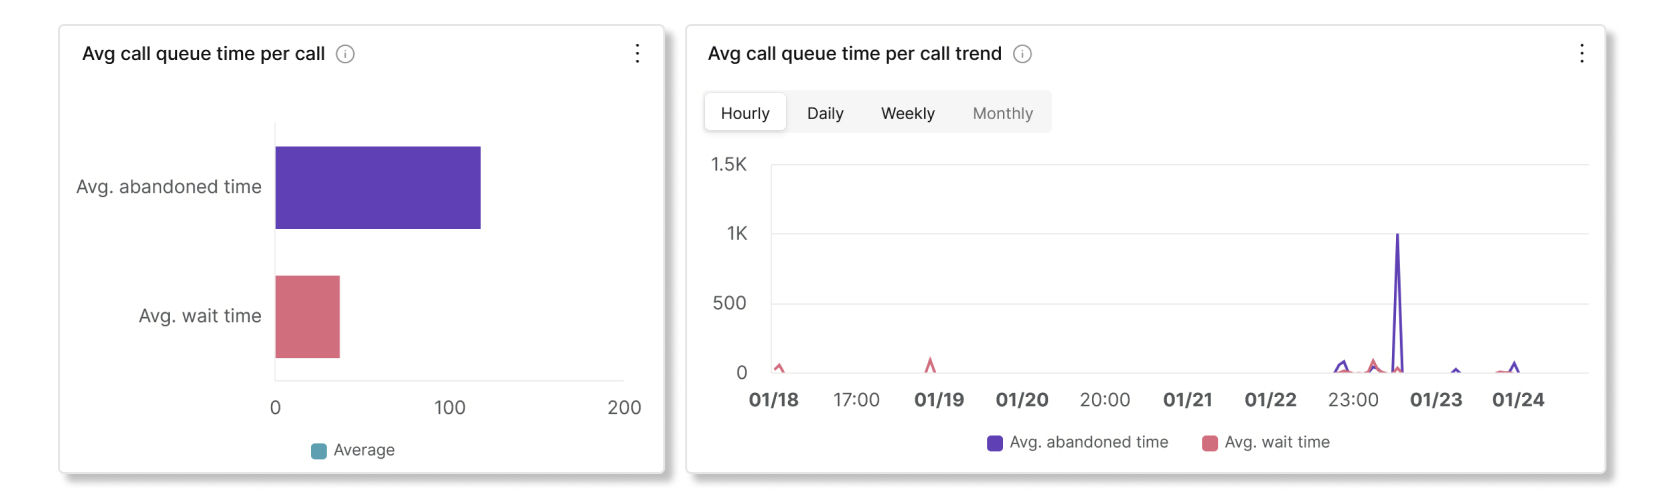 Prům. minuty fronty hovorů na hovor a grafy trendů v analýze statistik front hovorů